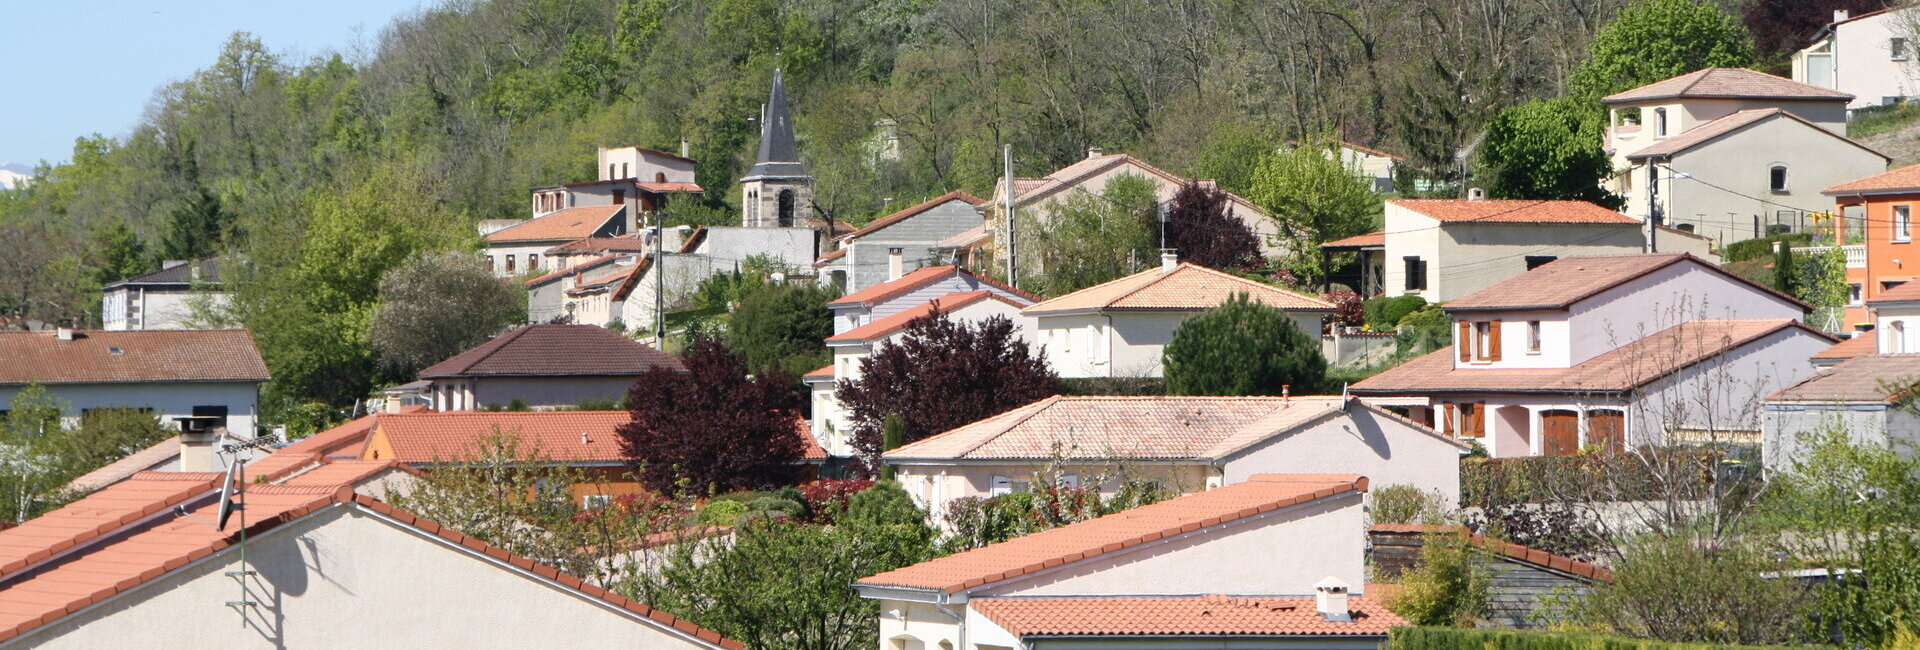 Commune Mairie Puy de Dôme Allier Auvergne Rhône Alpes